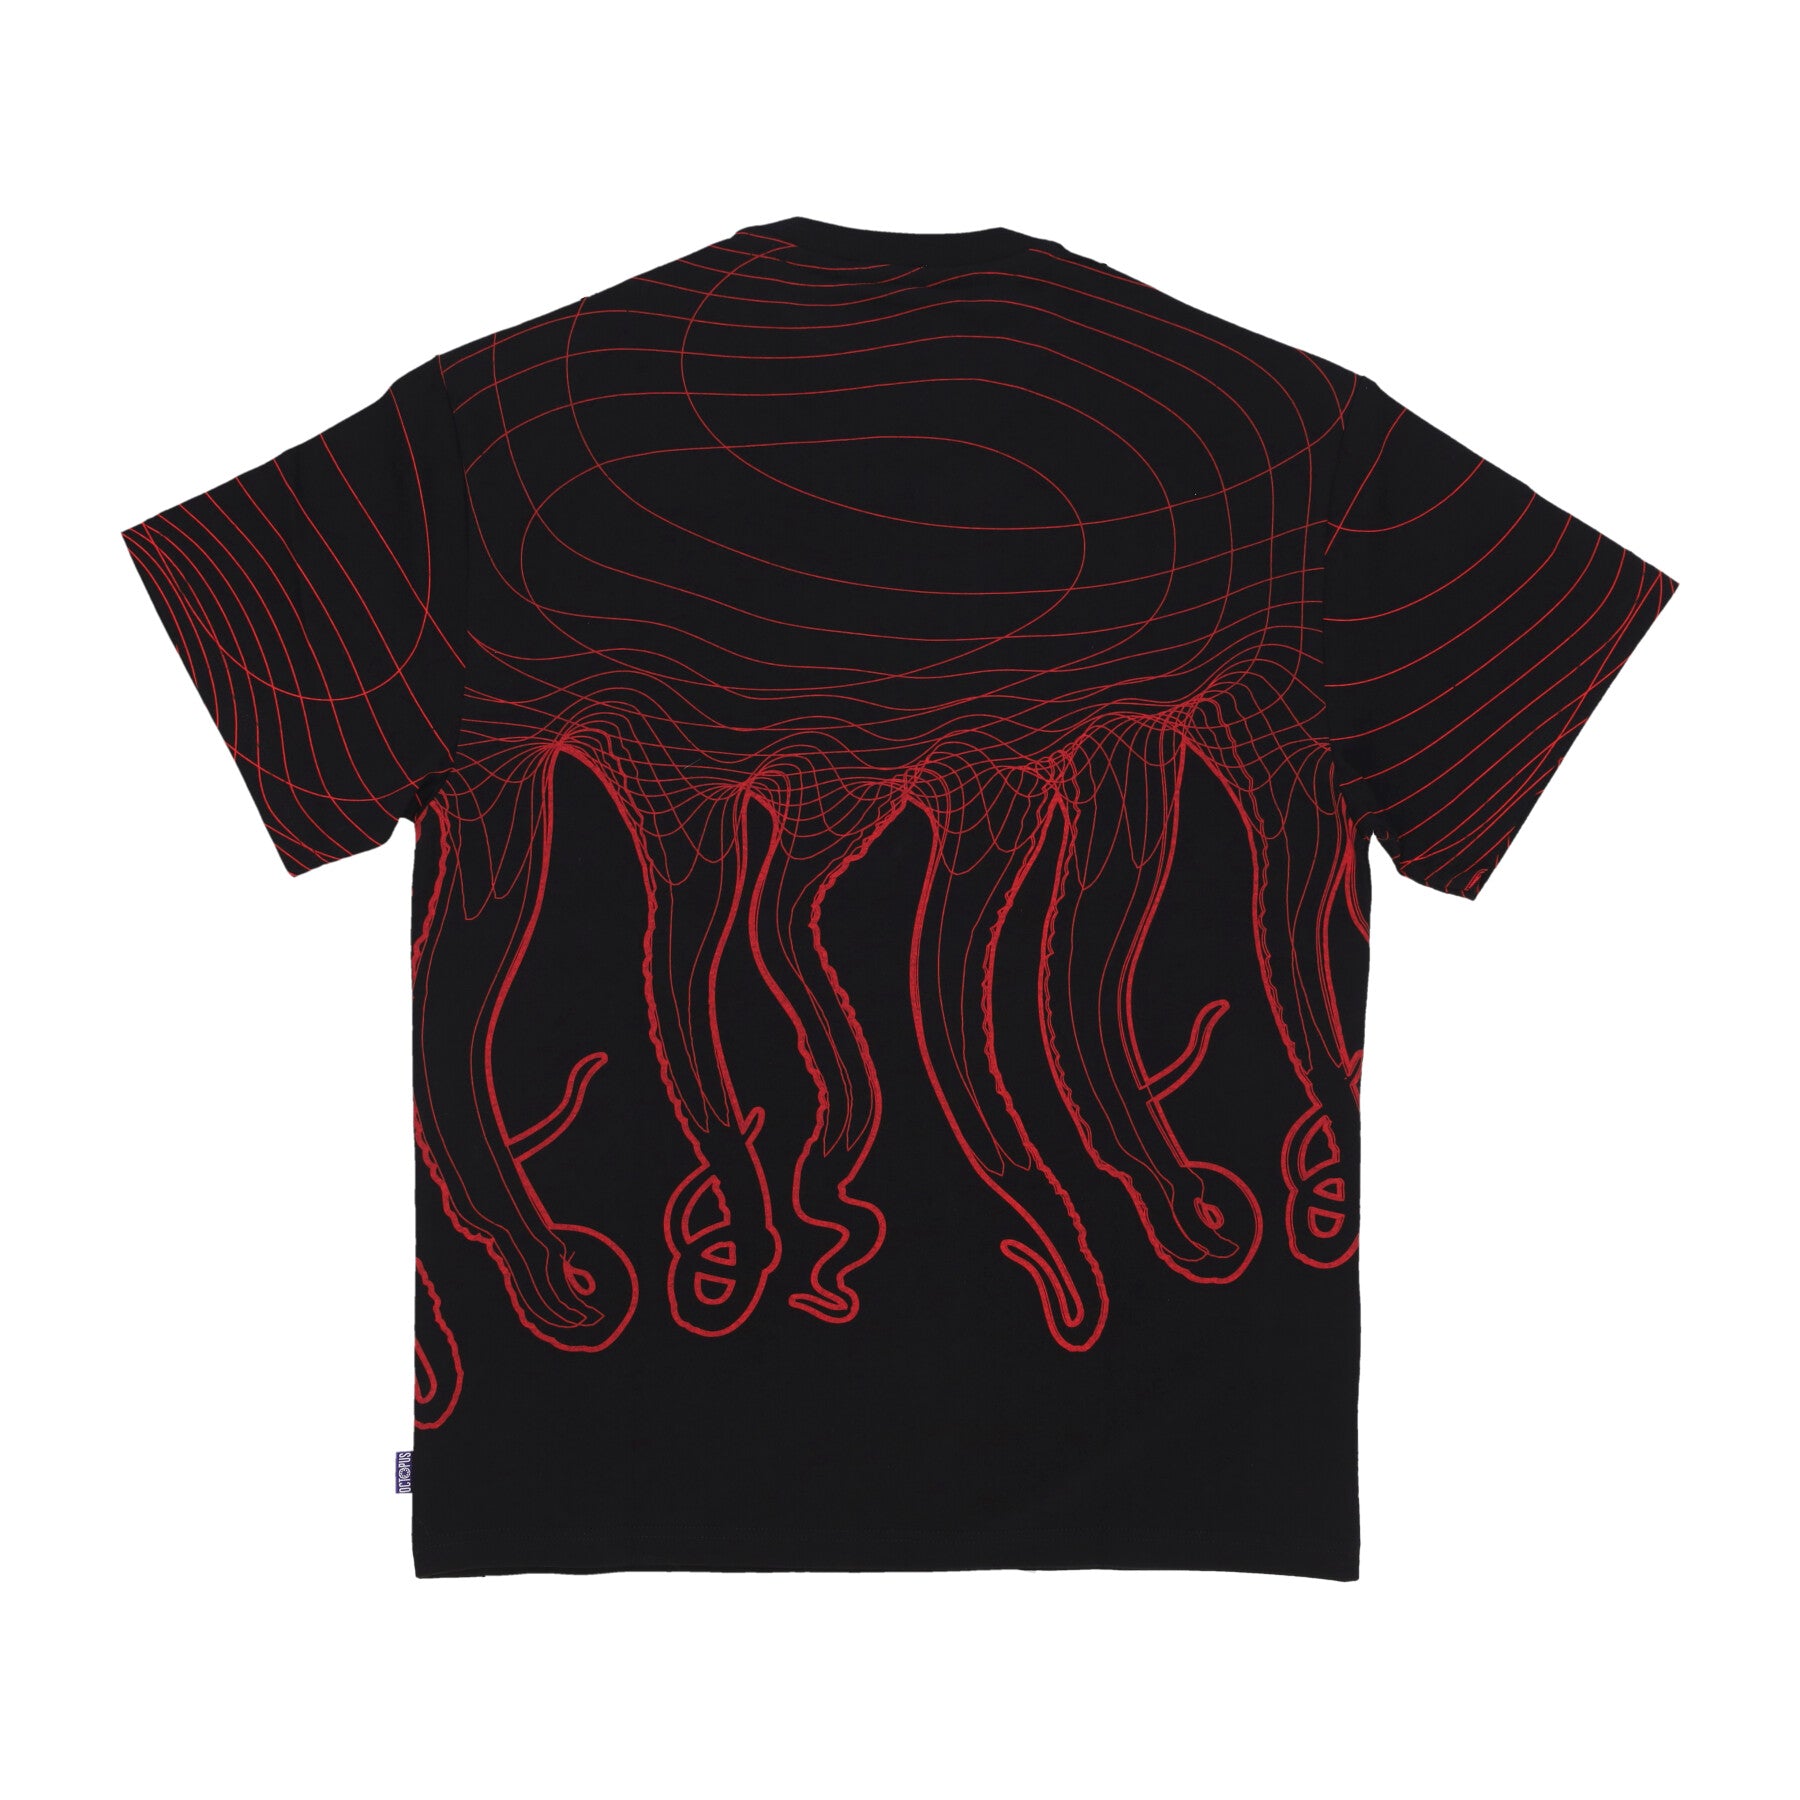 Evangelion 02 Flowing Octopus Tee Black Men's T-Shirt